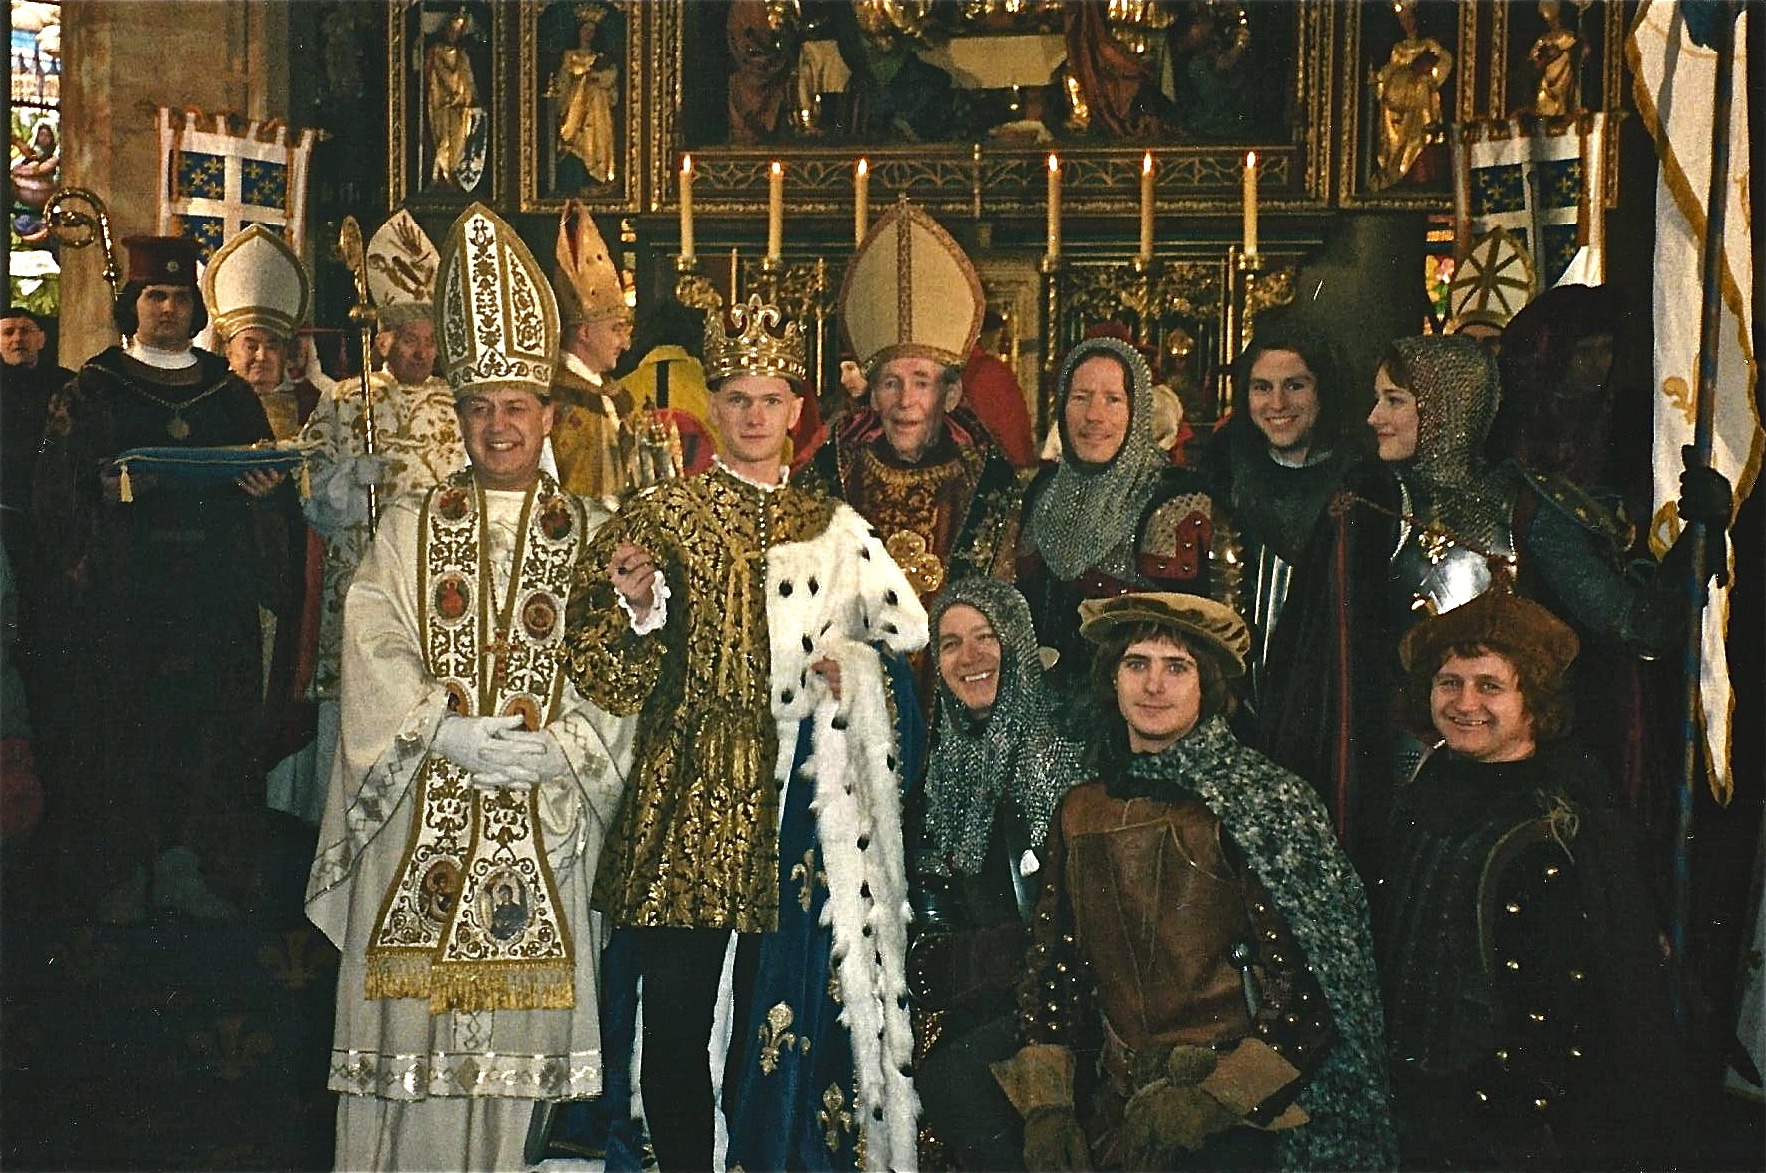 Joan of Arc cast